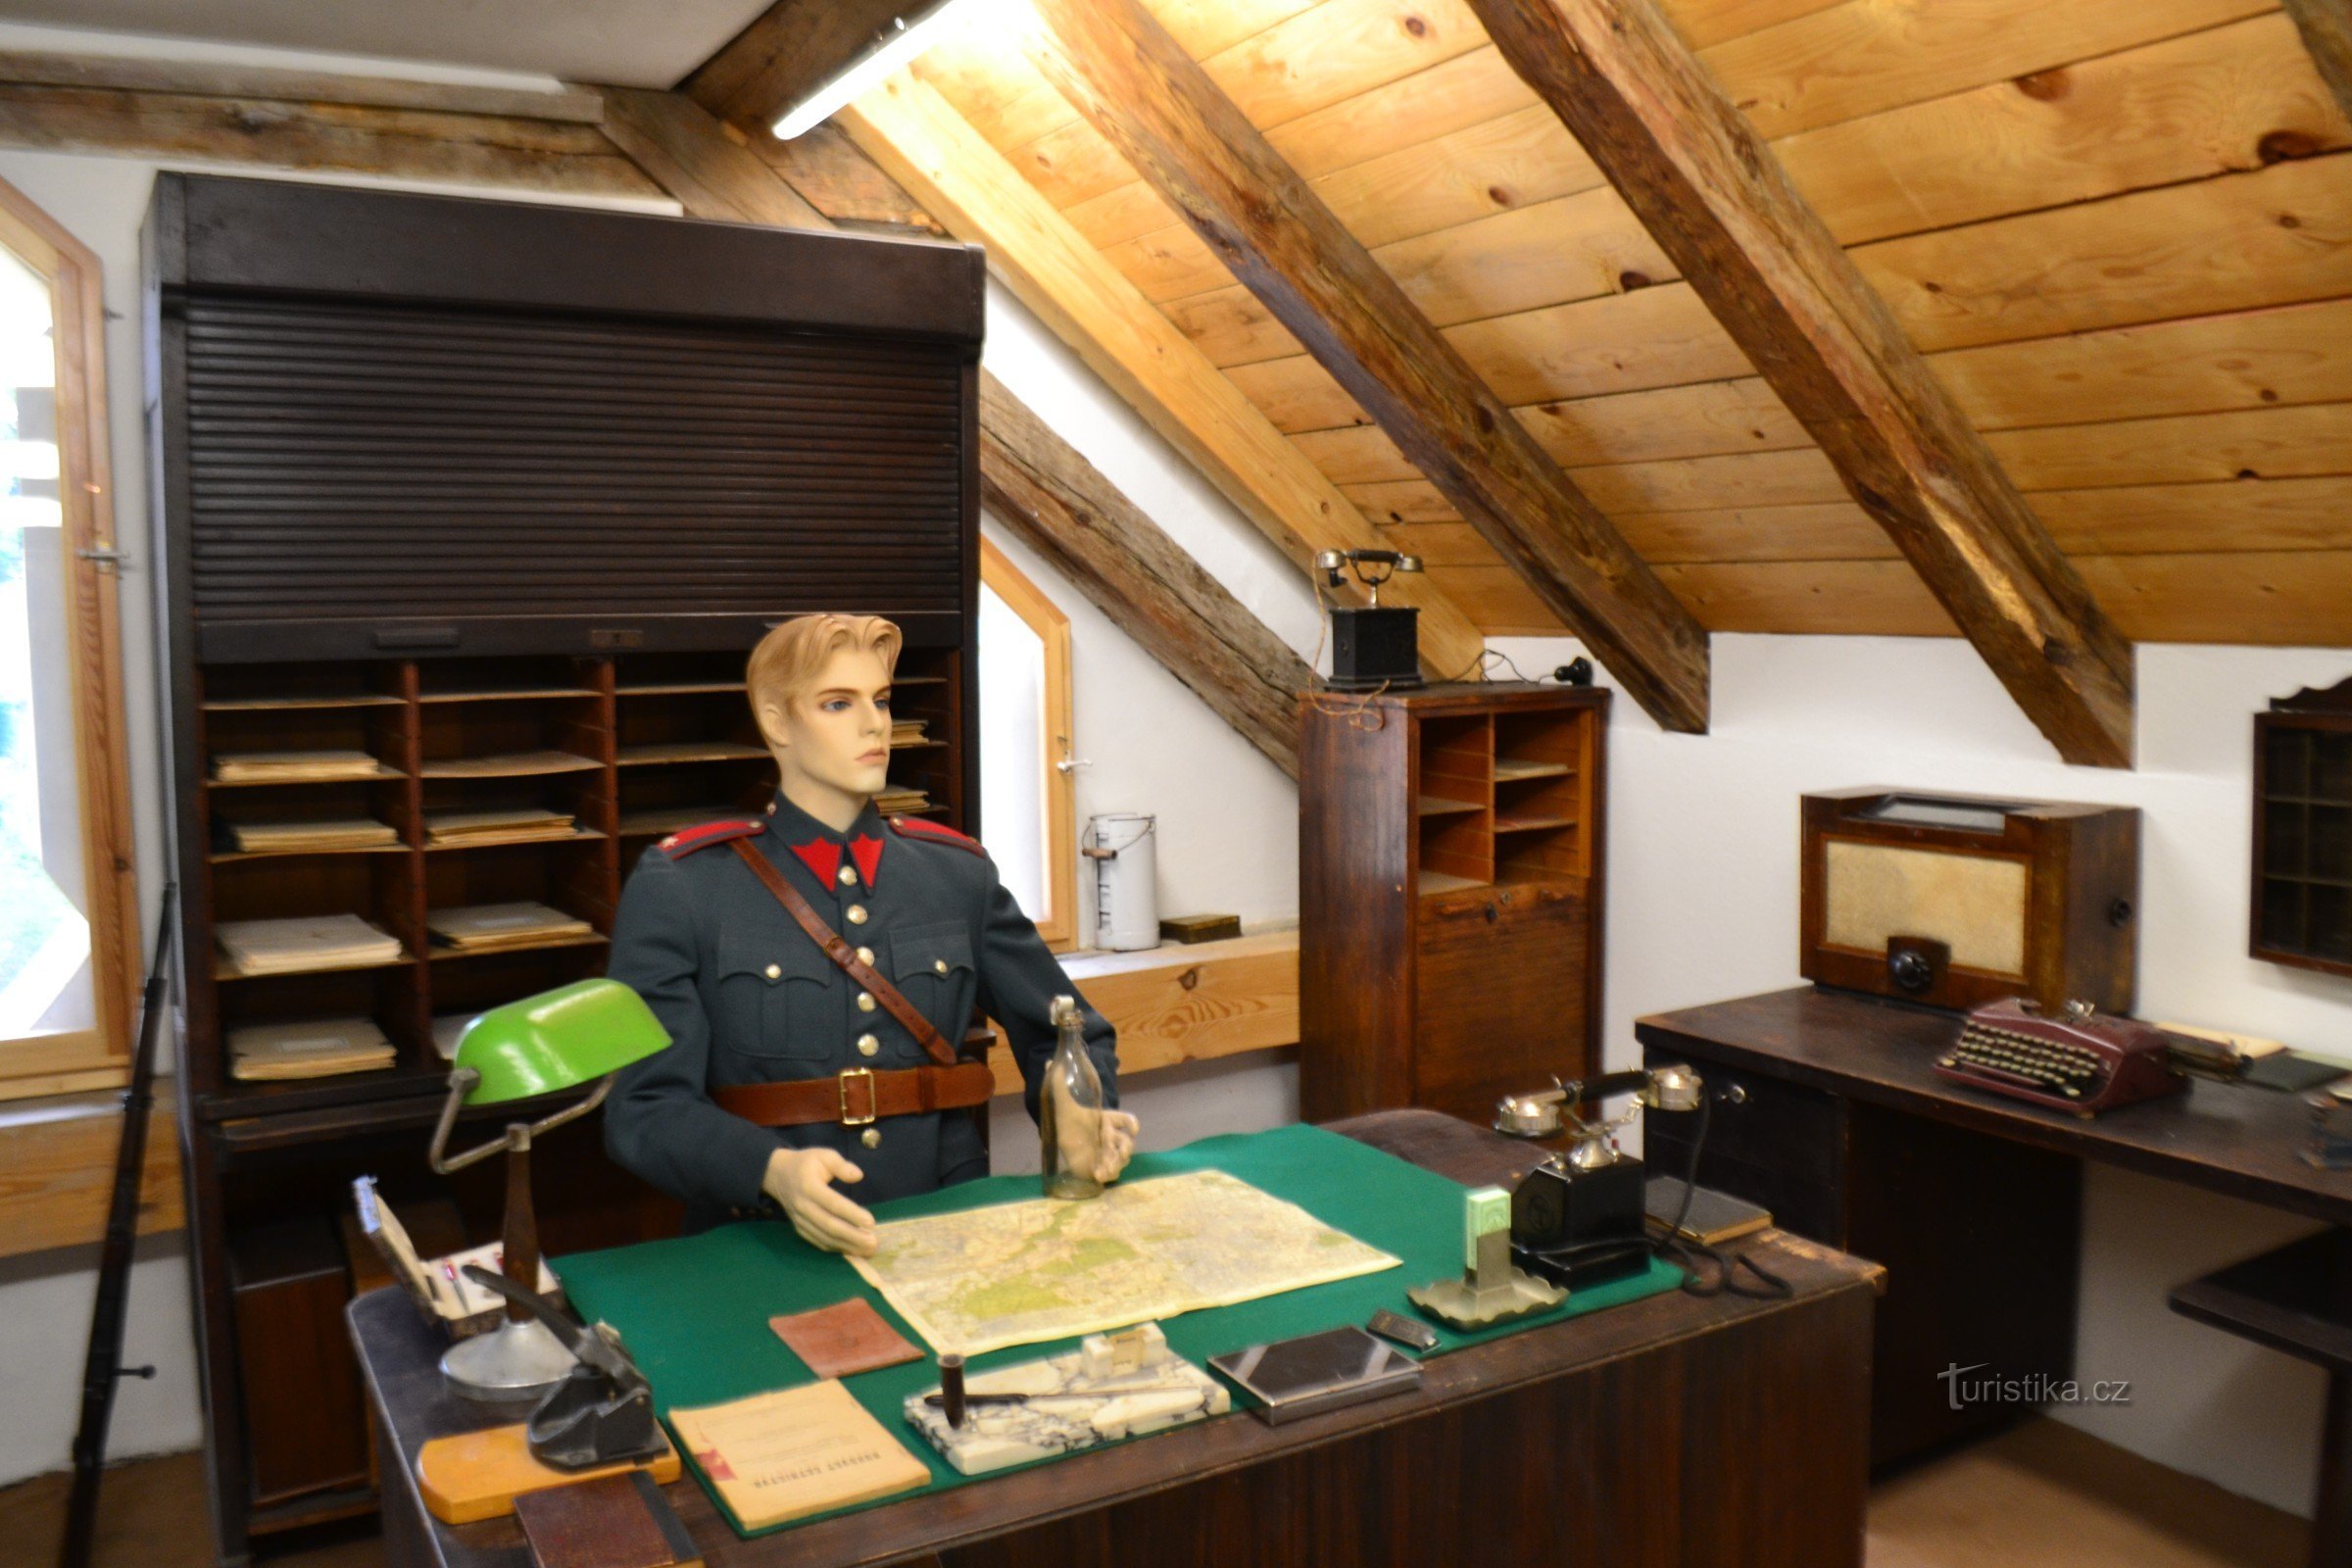 Oude koelkast - Hoe het leven was in de tijd van Tatíček Masaryk - het nieuwe museum neemt je mee terug d